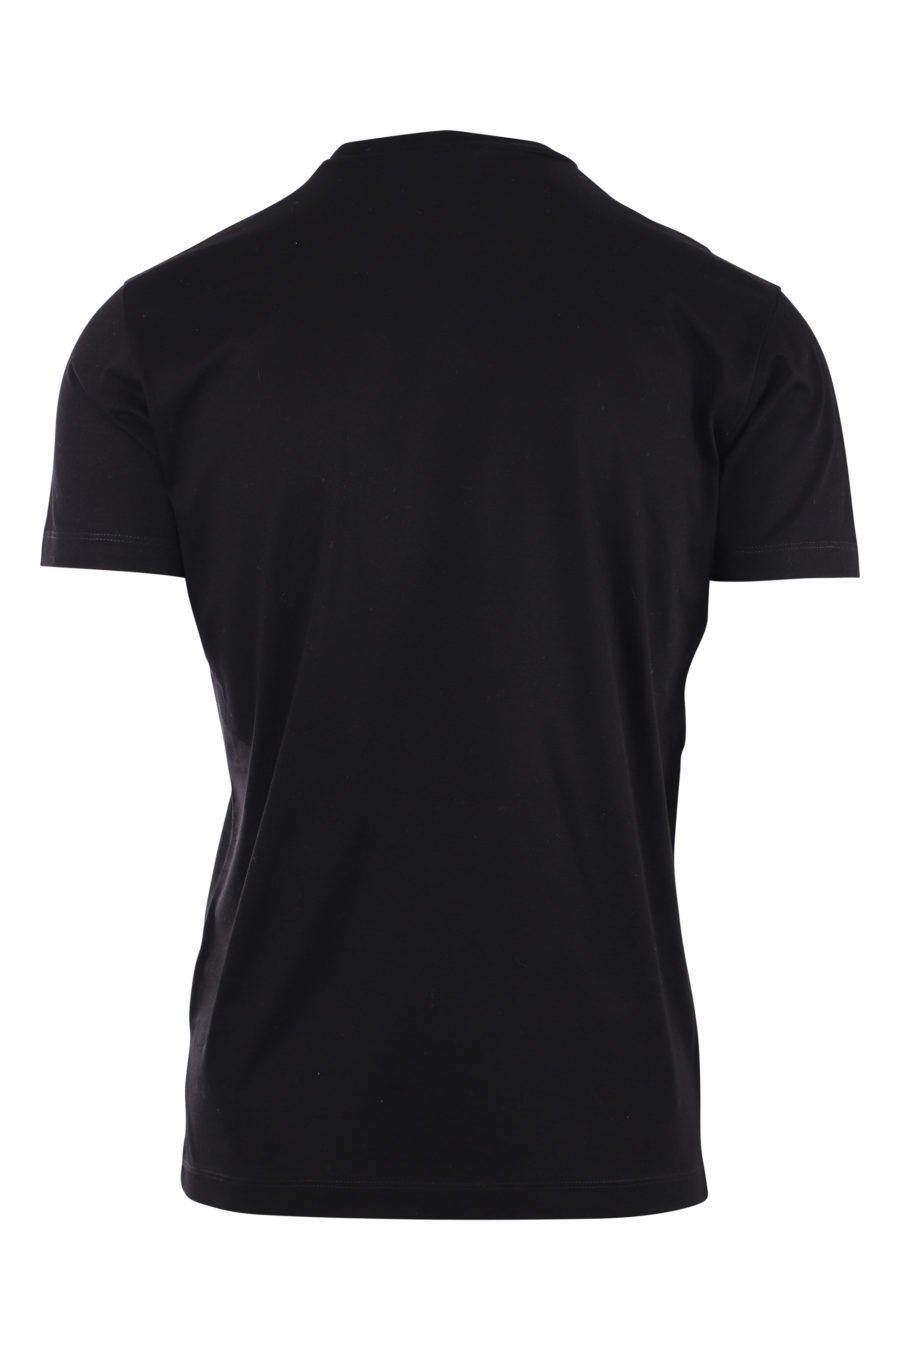 Schwarzes T-Shirt mit dem Logo des Planeten "Globetrotter" - IMG 9722